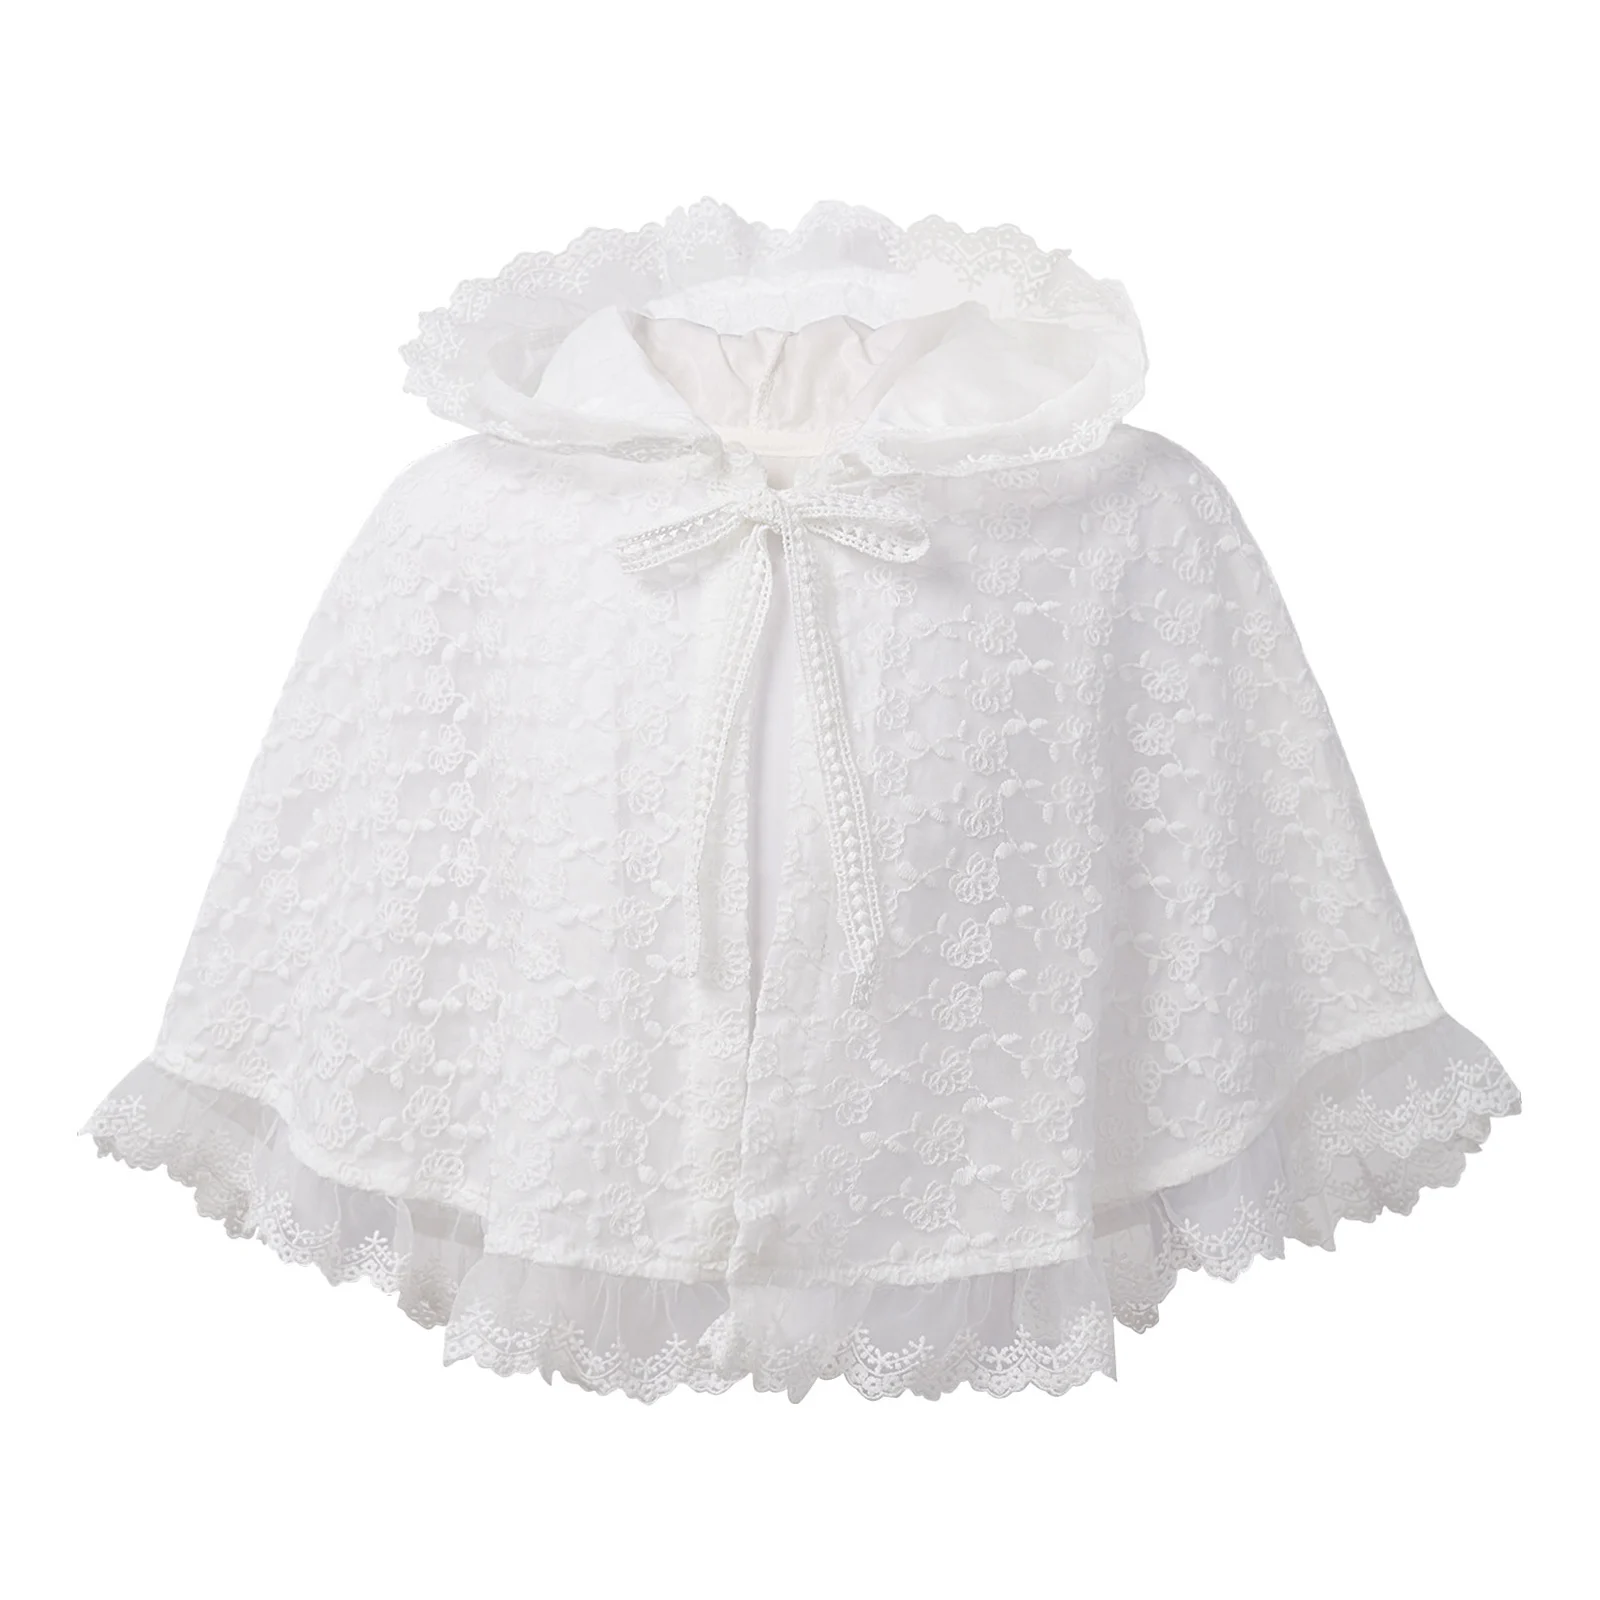 เด็กทารกเสื้อ Bolero ลูกไม้อย่างเป็นทางการงานแต่งงานเสื้อคลุมผ้าคลุมไหล่เจ้าหญิง Baptism Christening Hooded Cape ...